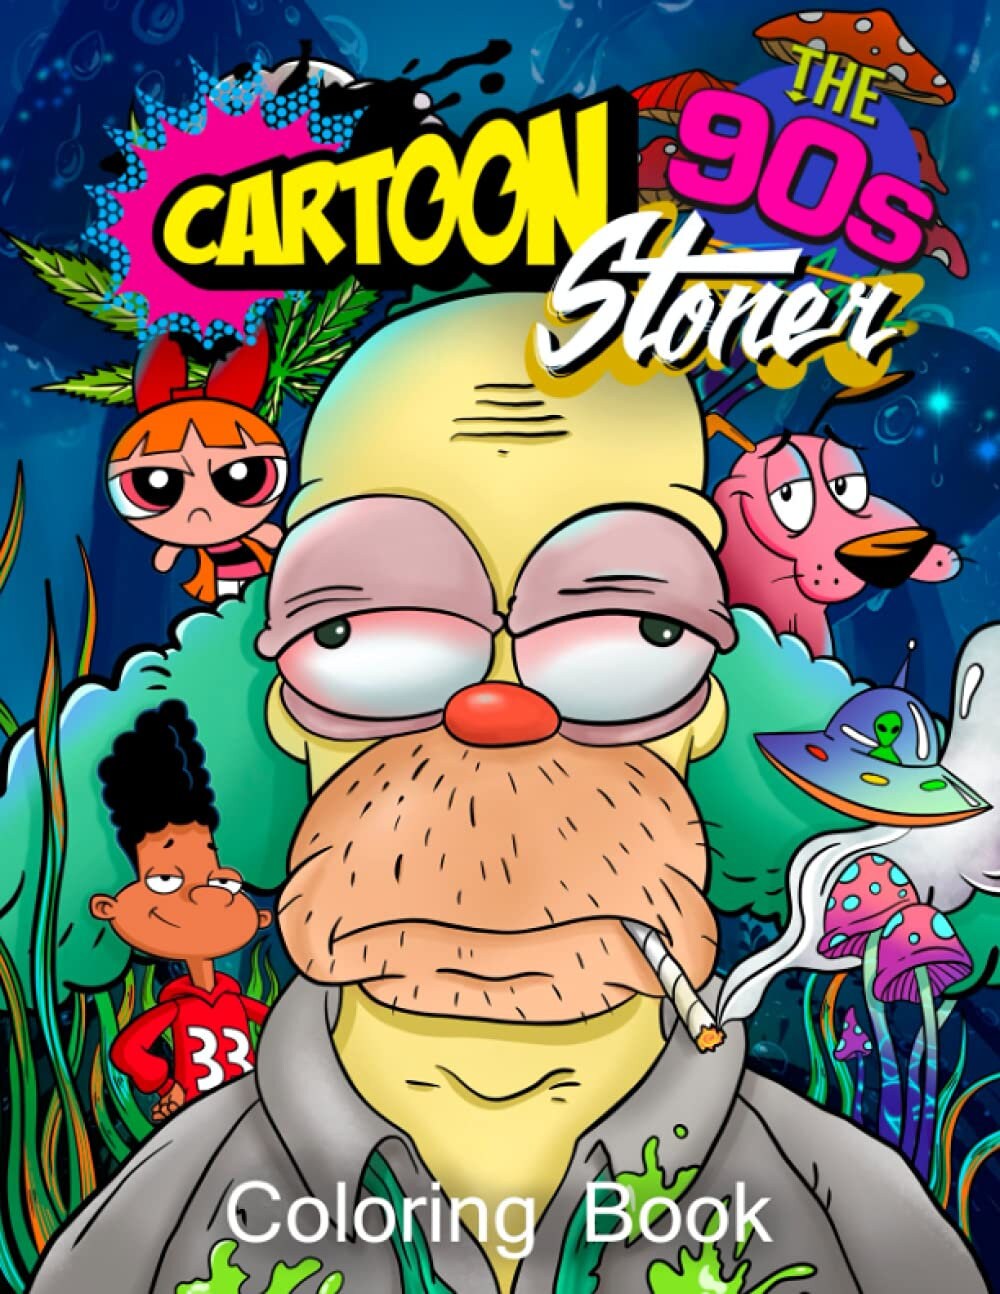 stoned cartoon characters tumblr